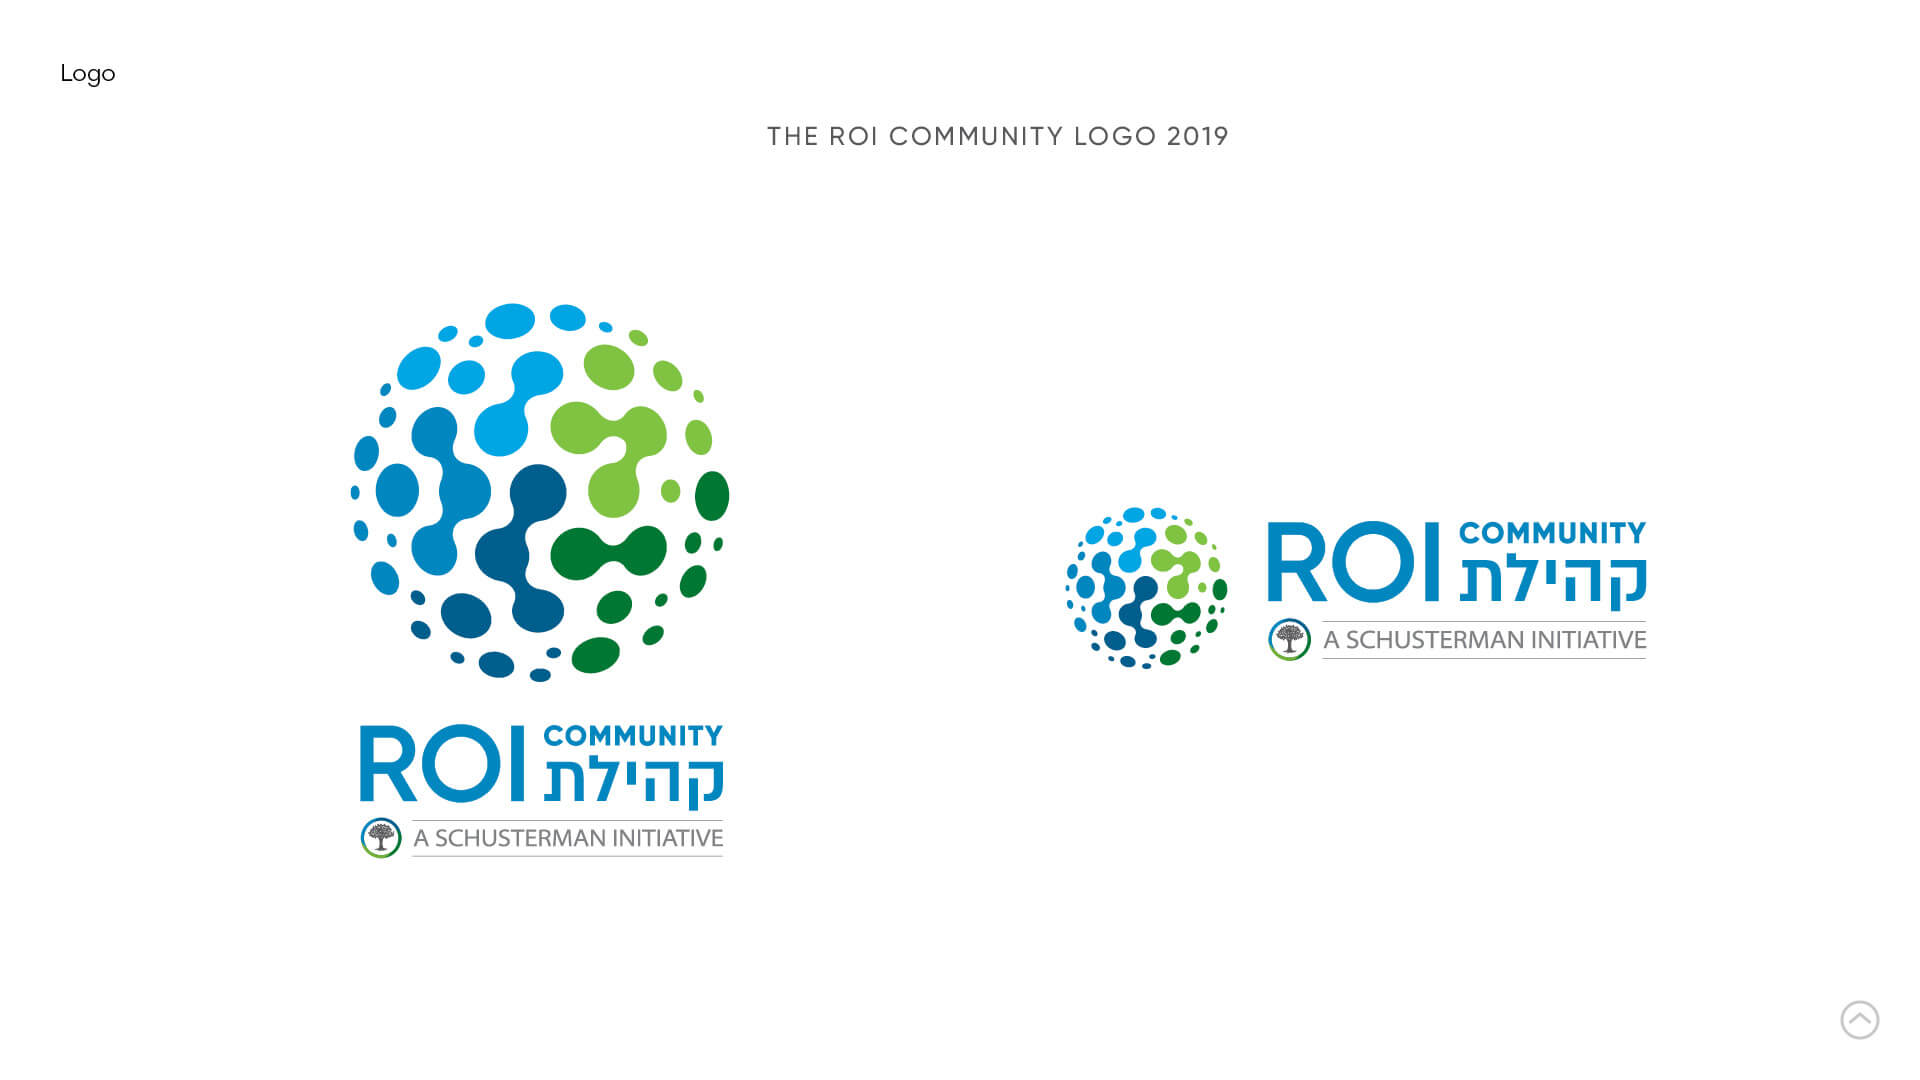 ROI COMMUNITY LOGO